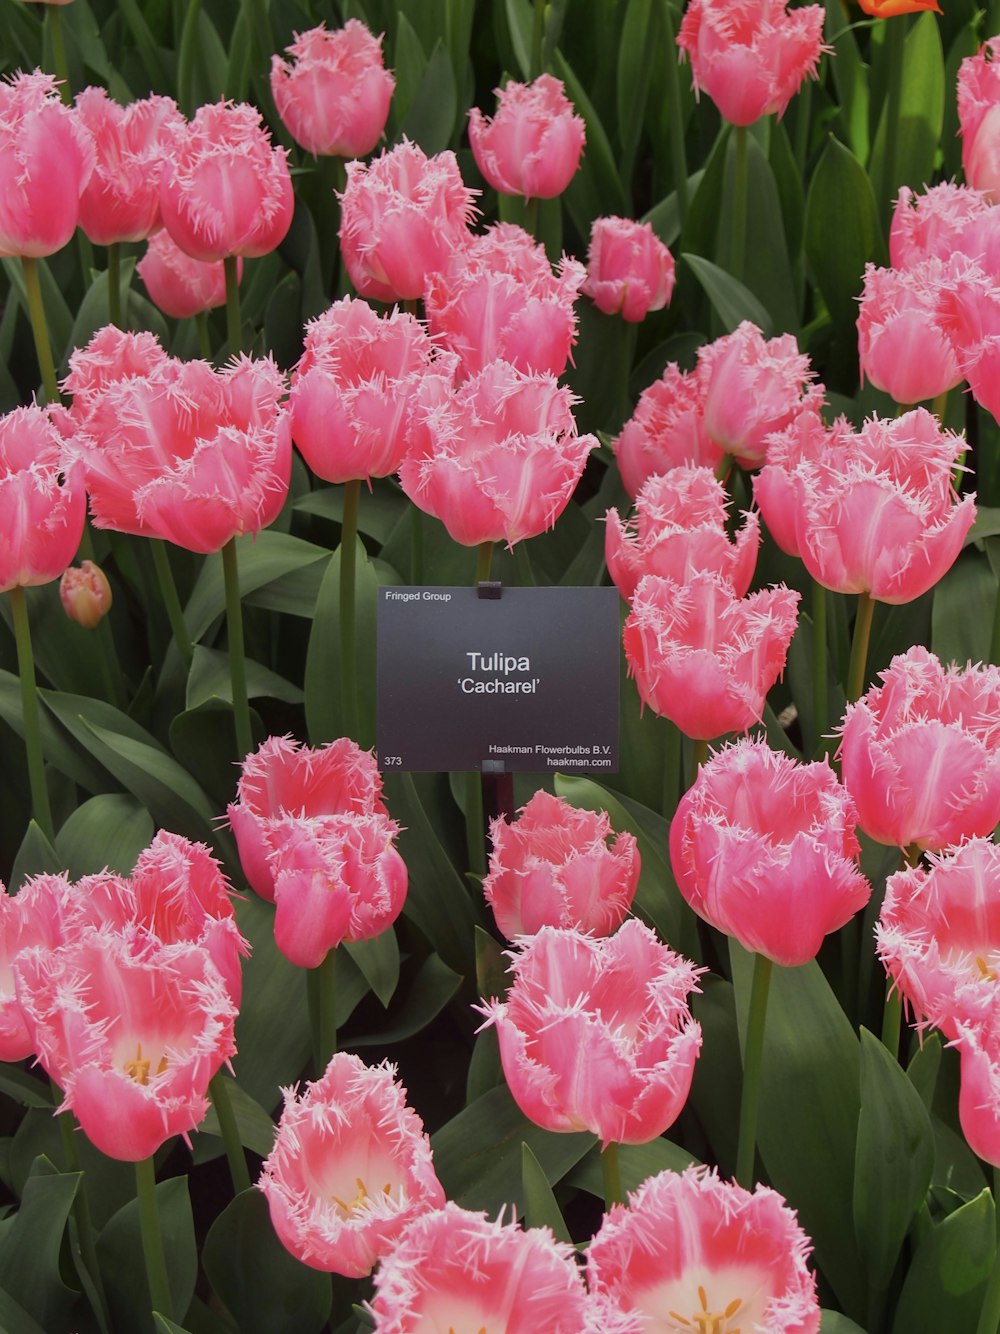 Un campo de tulipanes rosados con una etiqueta en el medio